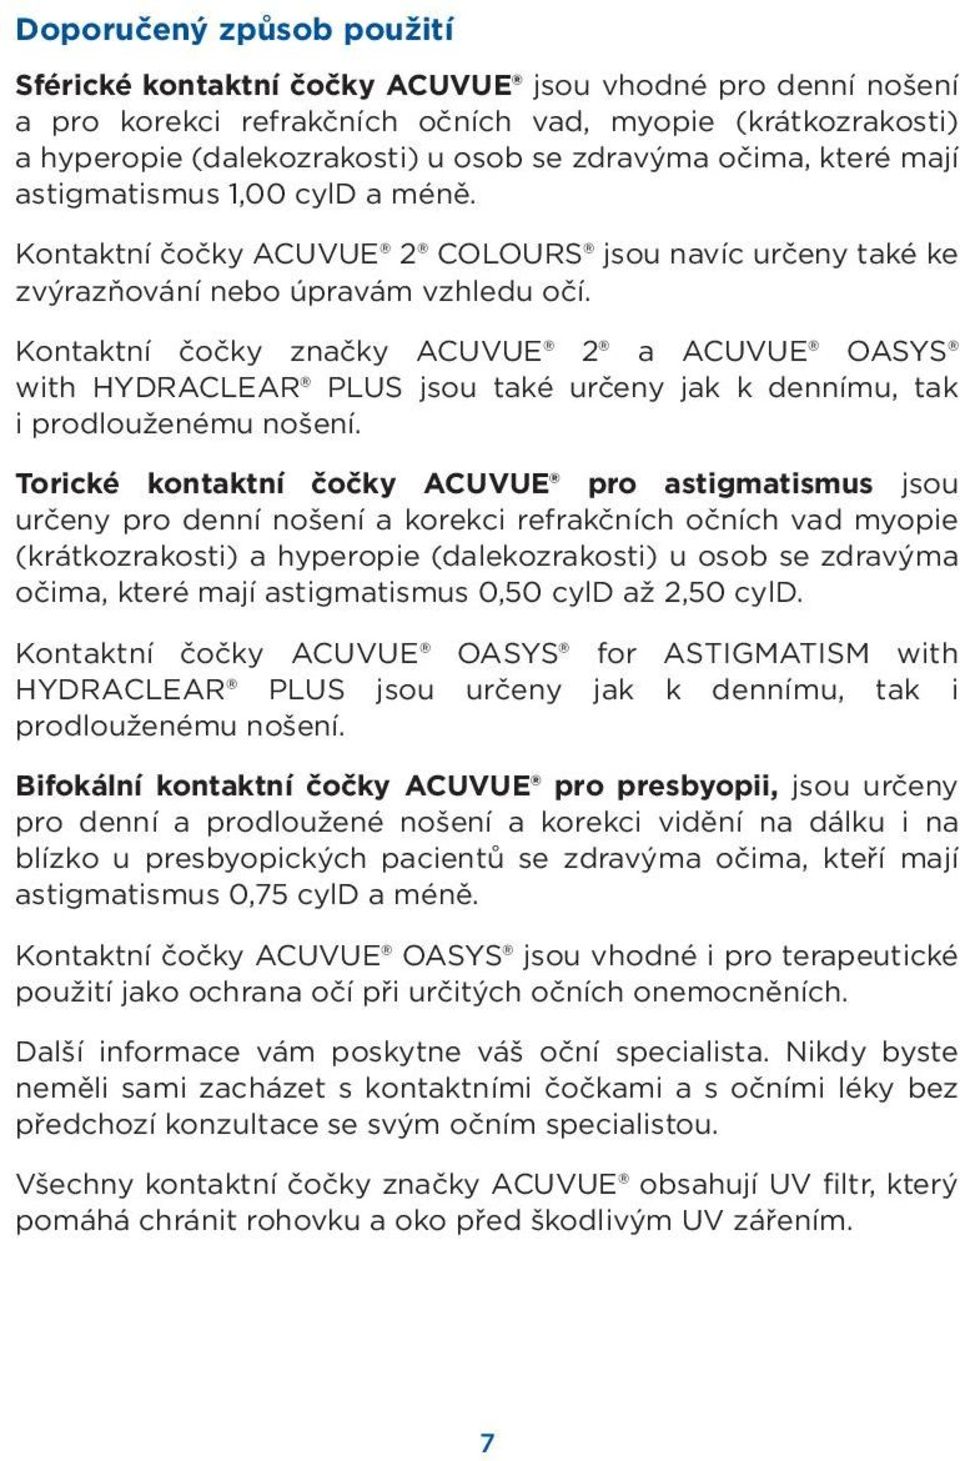 Kontaktní čočky značky ACUVUE 2 a ACUVUE OASYS with HYDRACLEAR PLUS jsou také určeny jak k dennímu, tak i prodlouženému nošení.